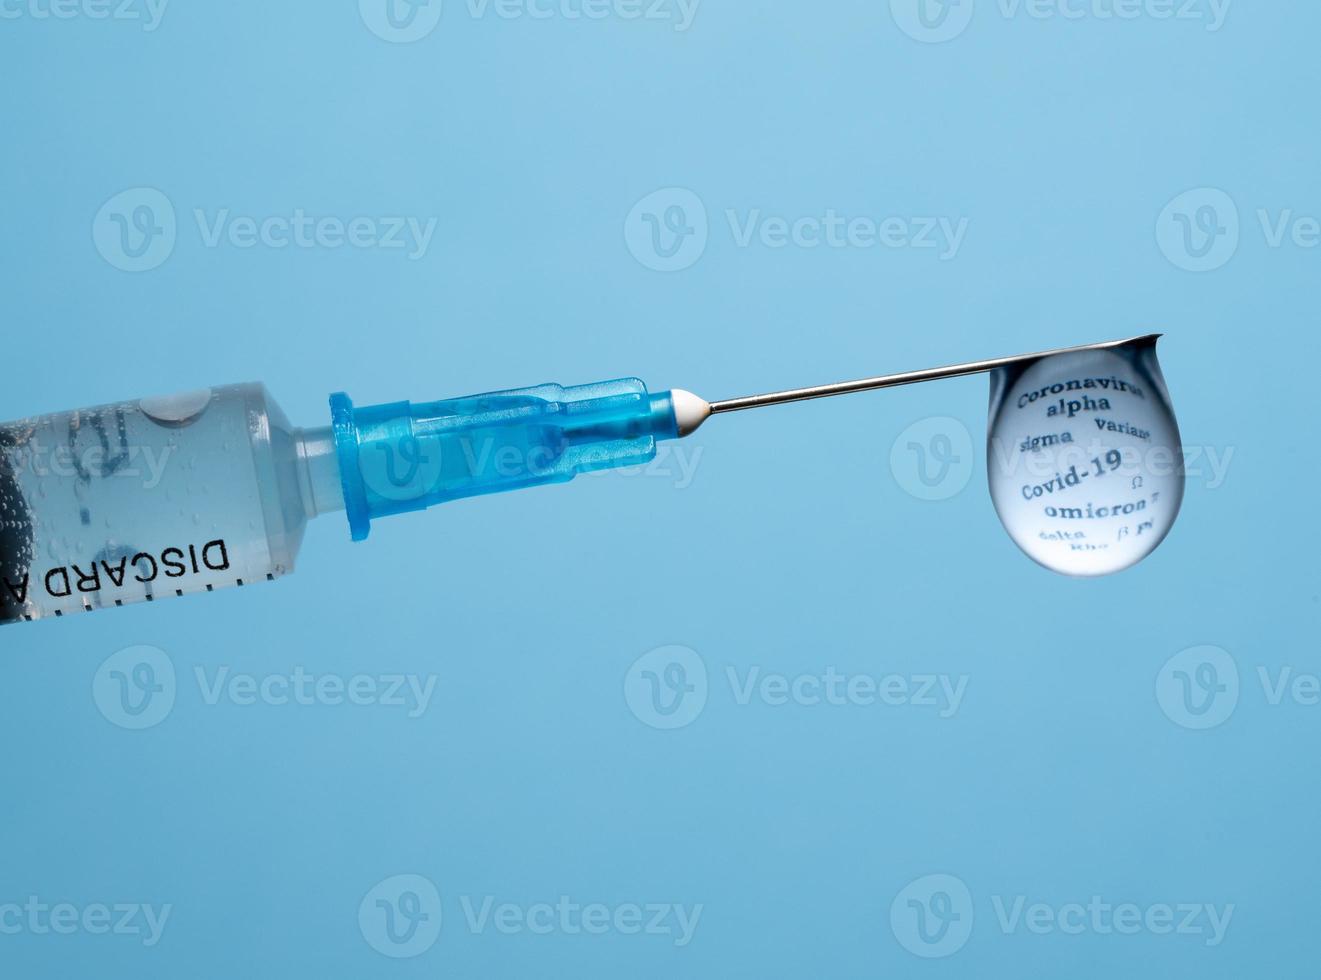 concetto di varianti covid-19 ed efficacia dei vaccini foto